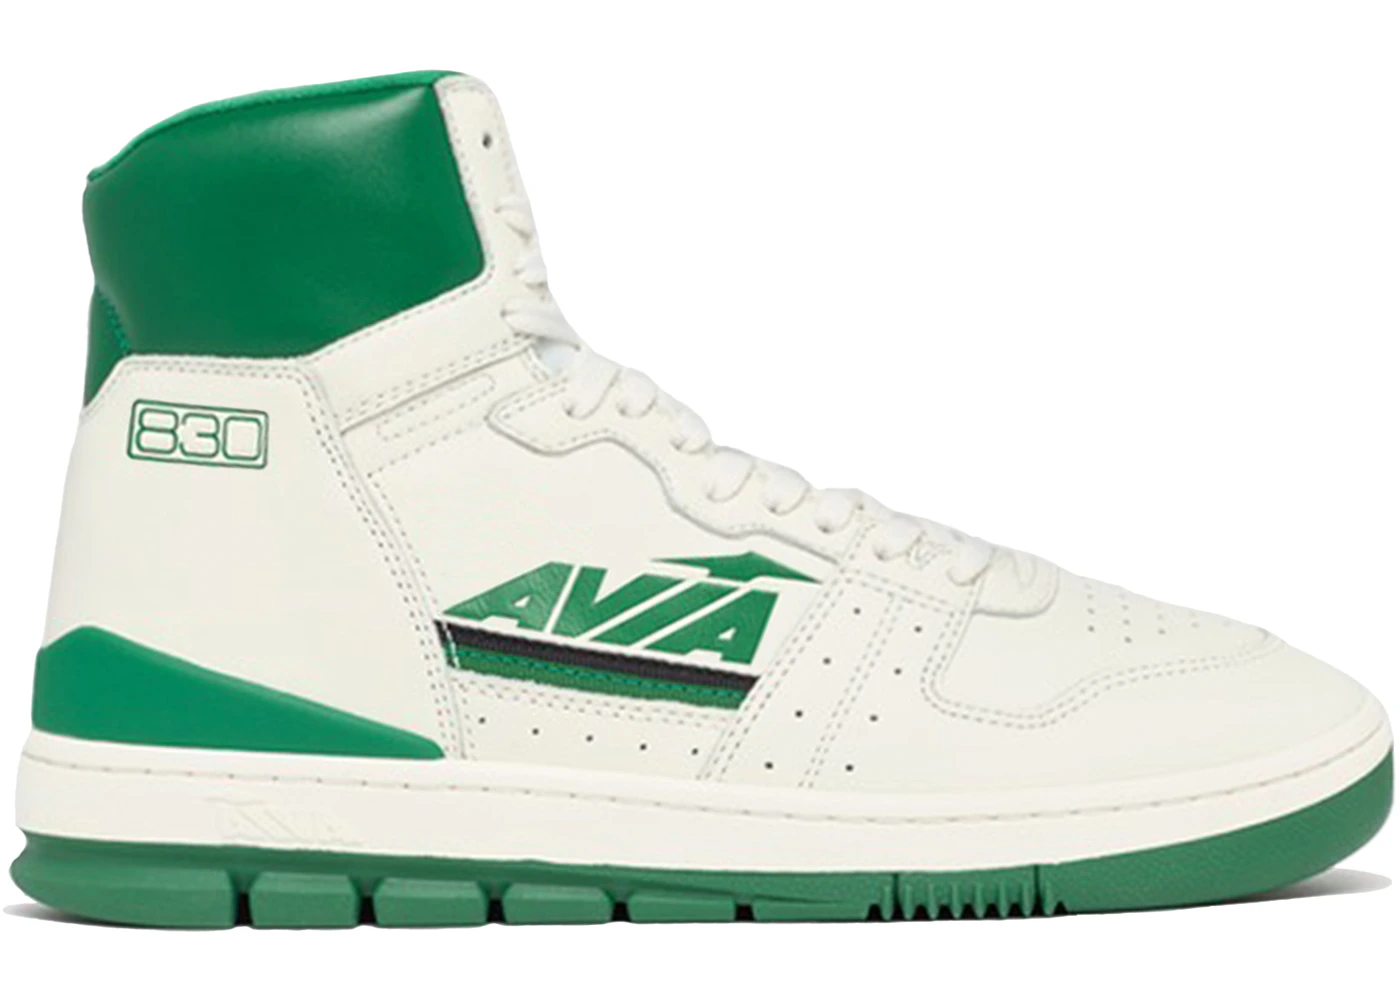 AVIA 830 OG Retro White Green Men's - Sneakers - US